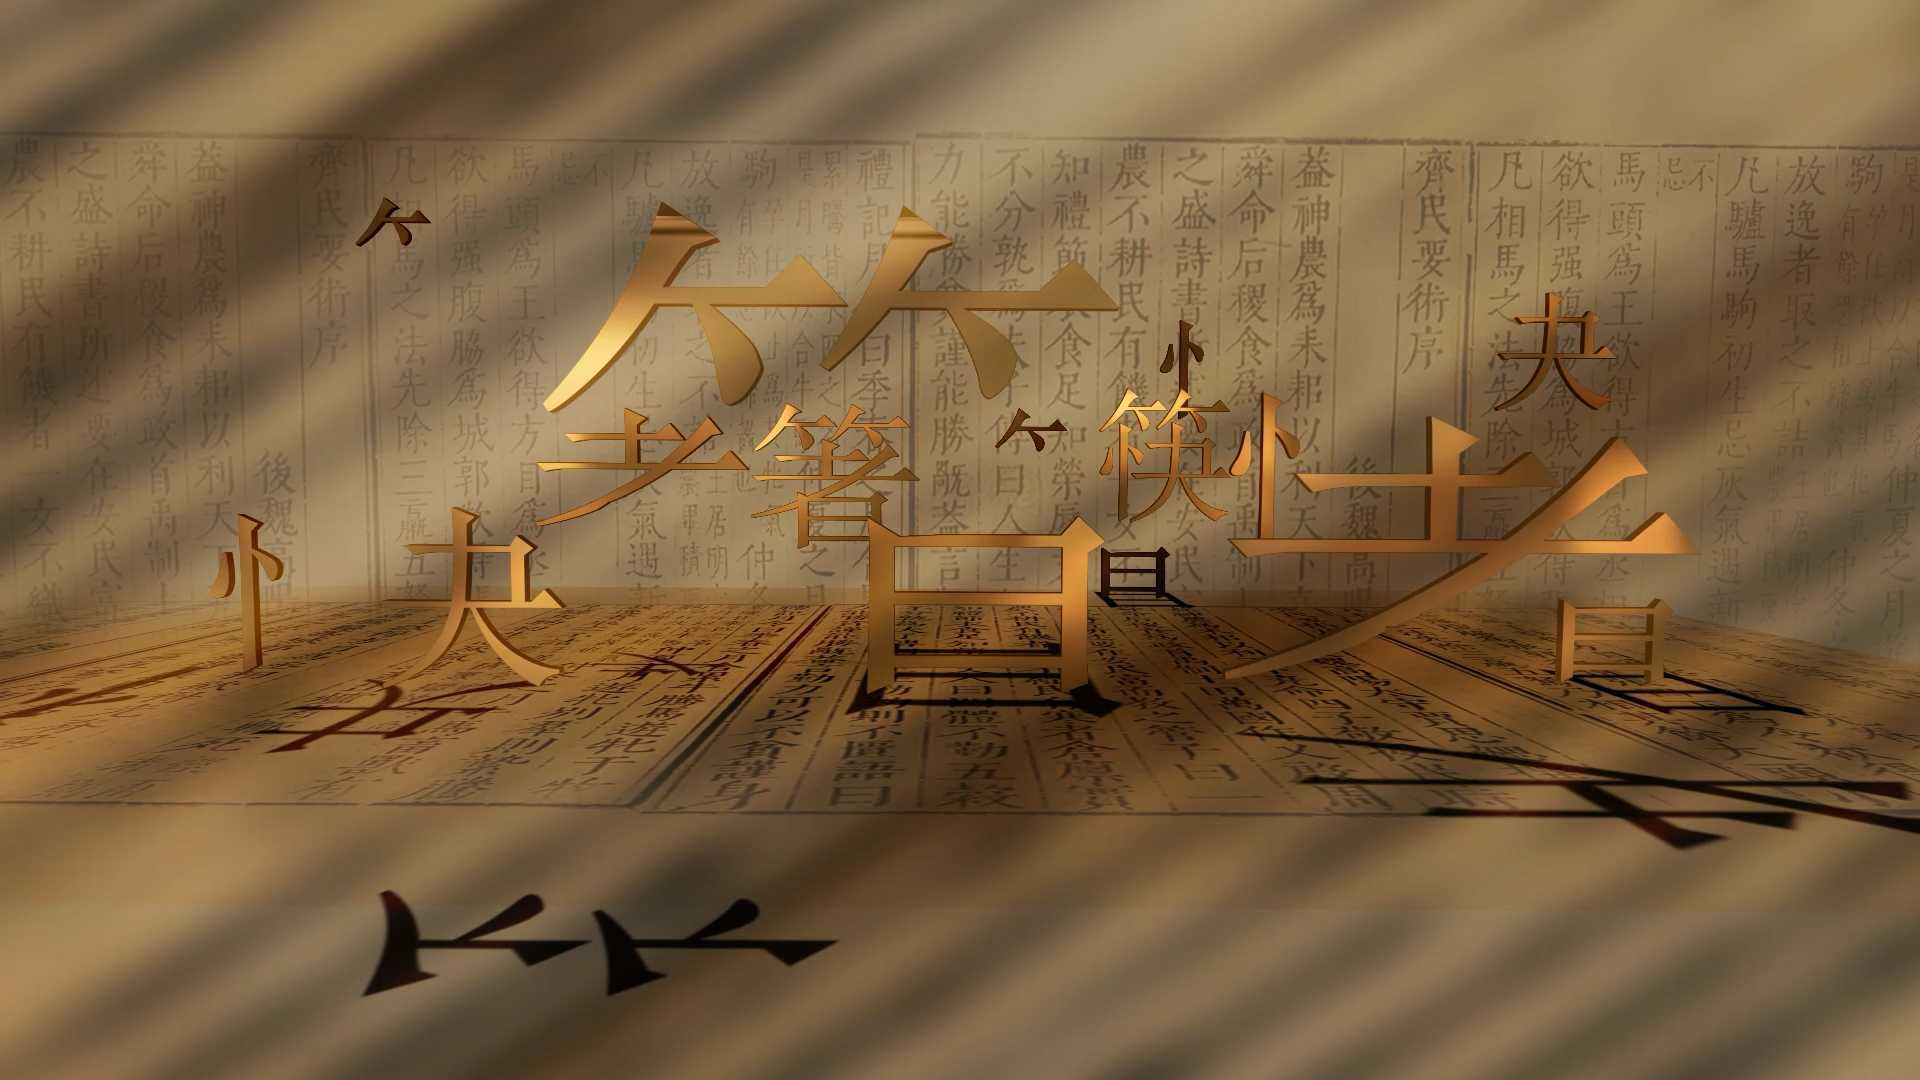 《筷子出海》大学生国赛参赛作品